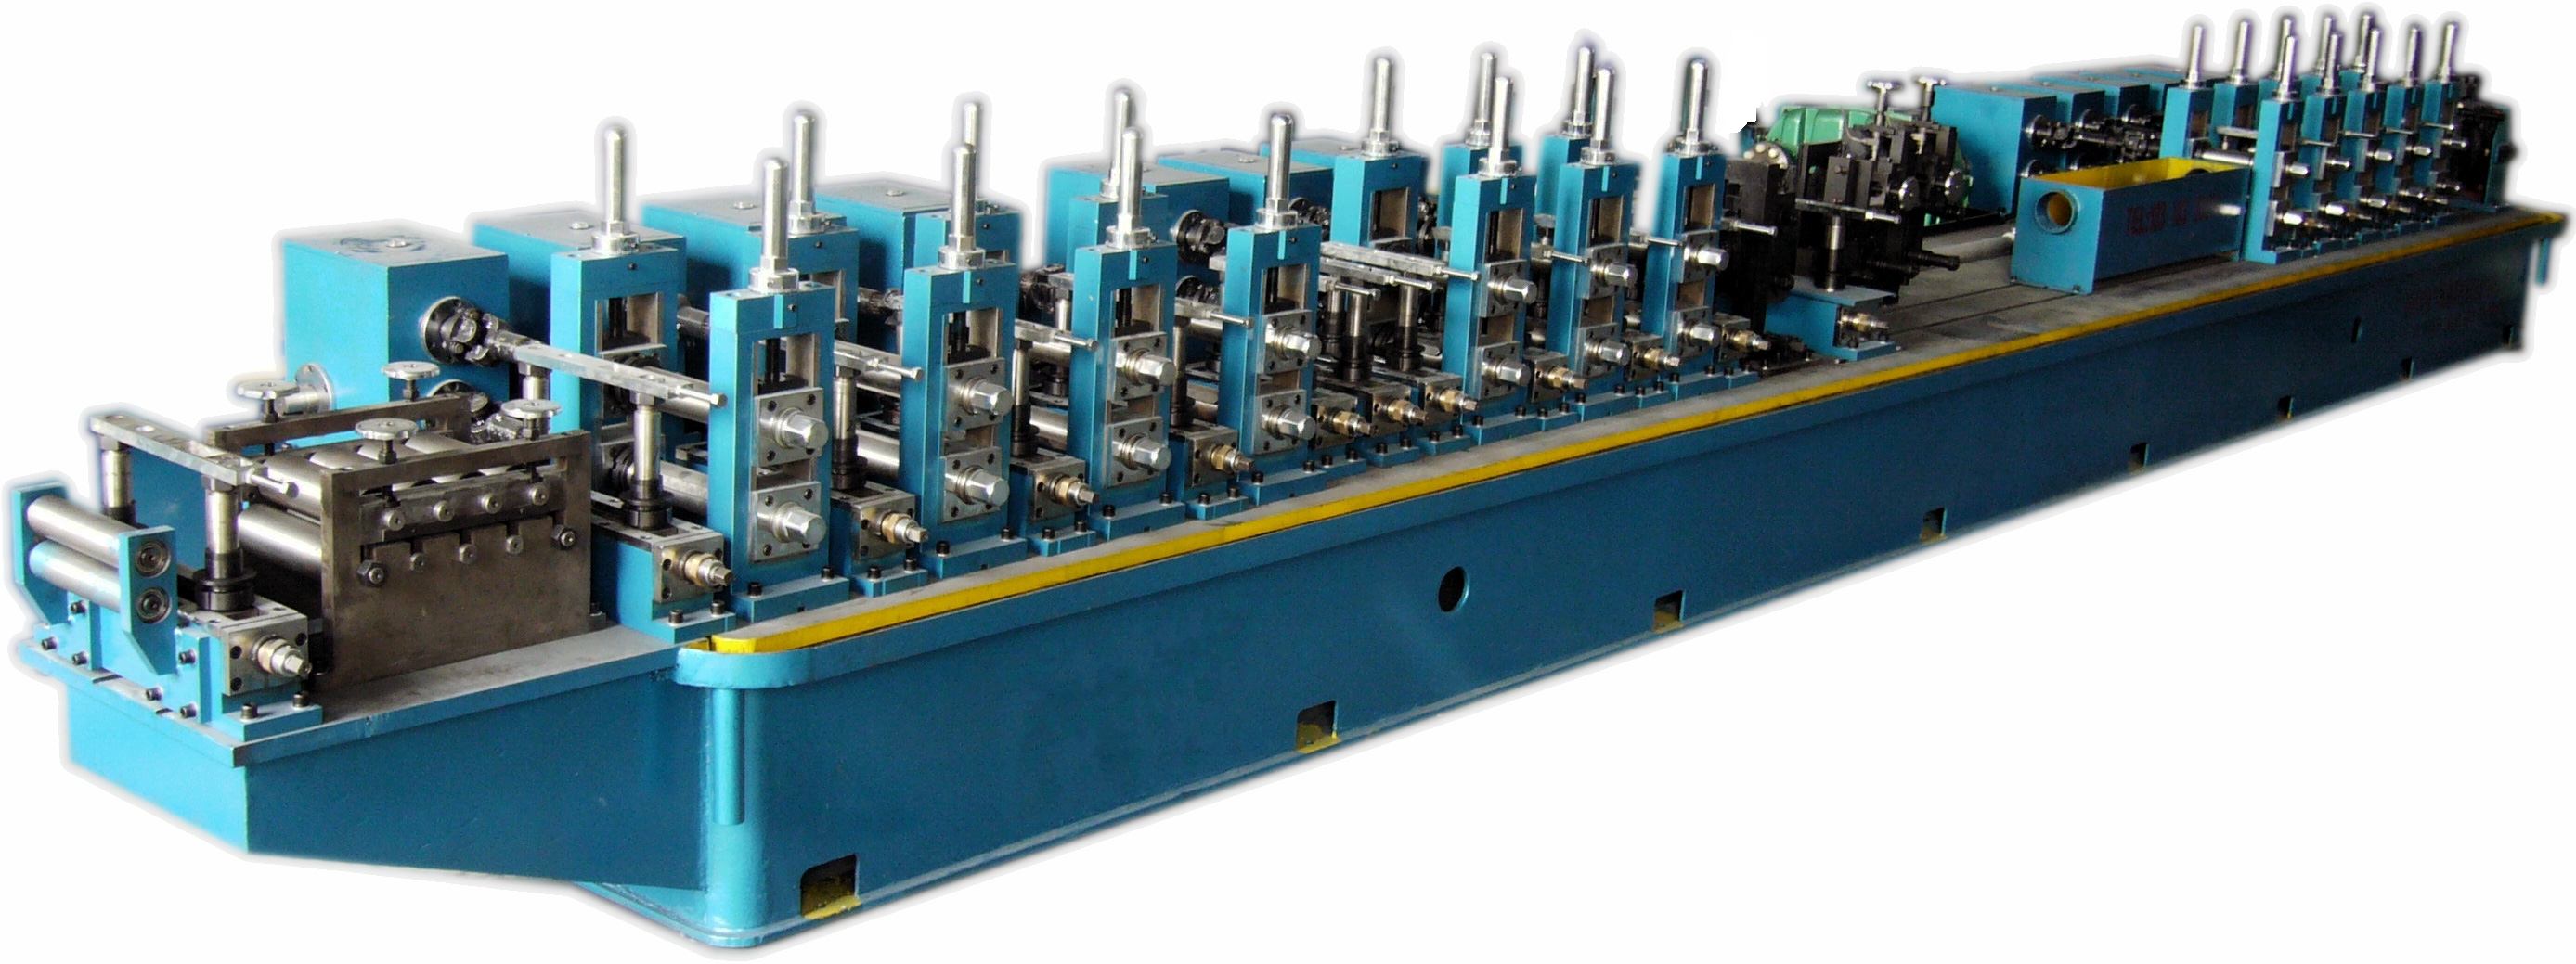 冠杰HF45焊管机组高频焊管设备图片